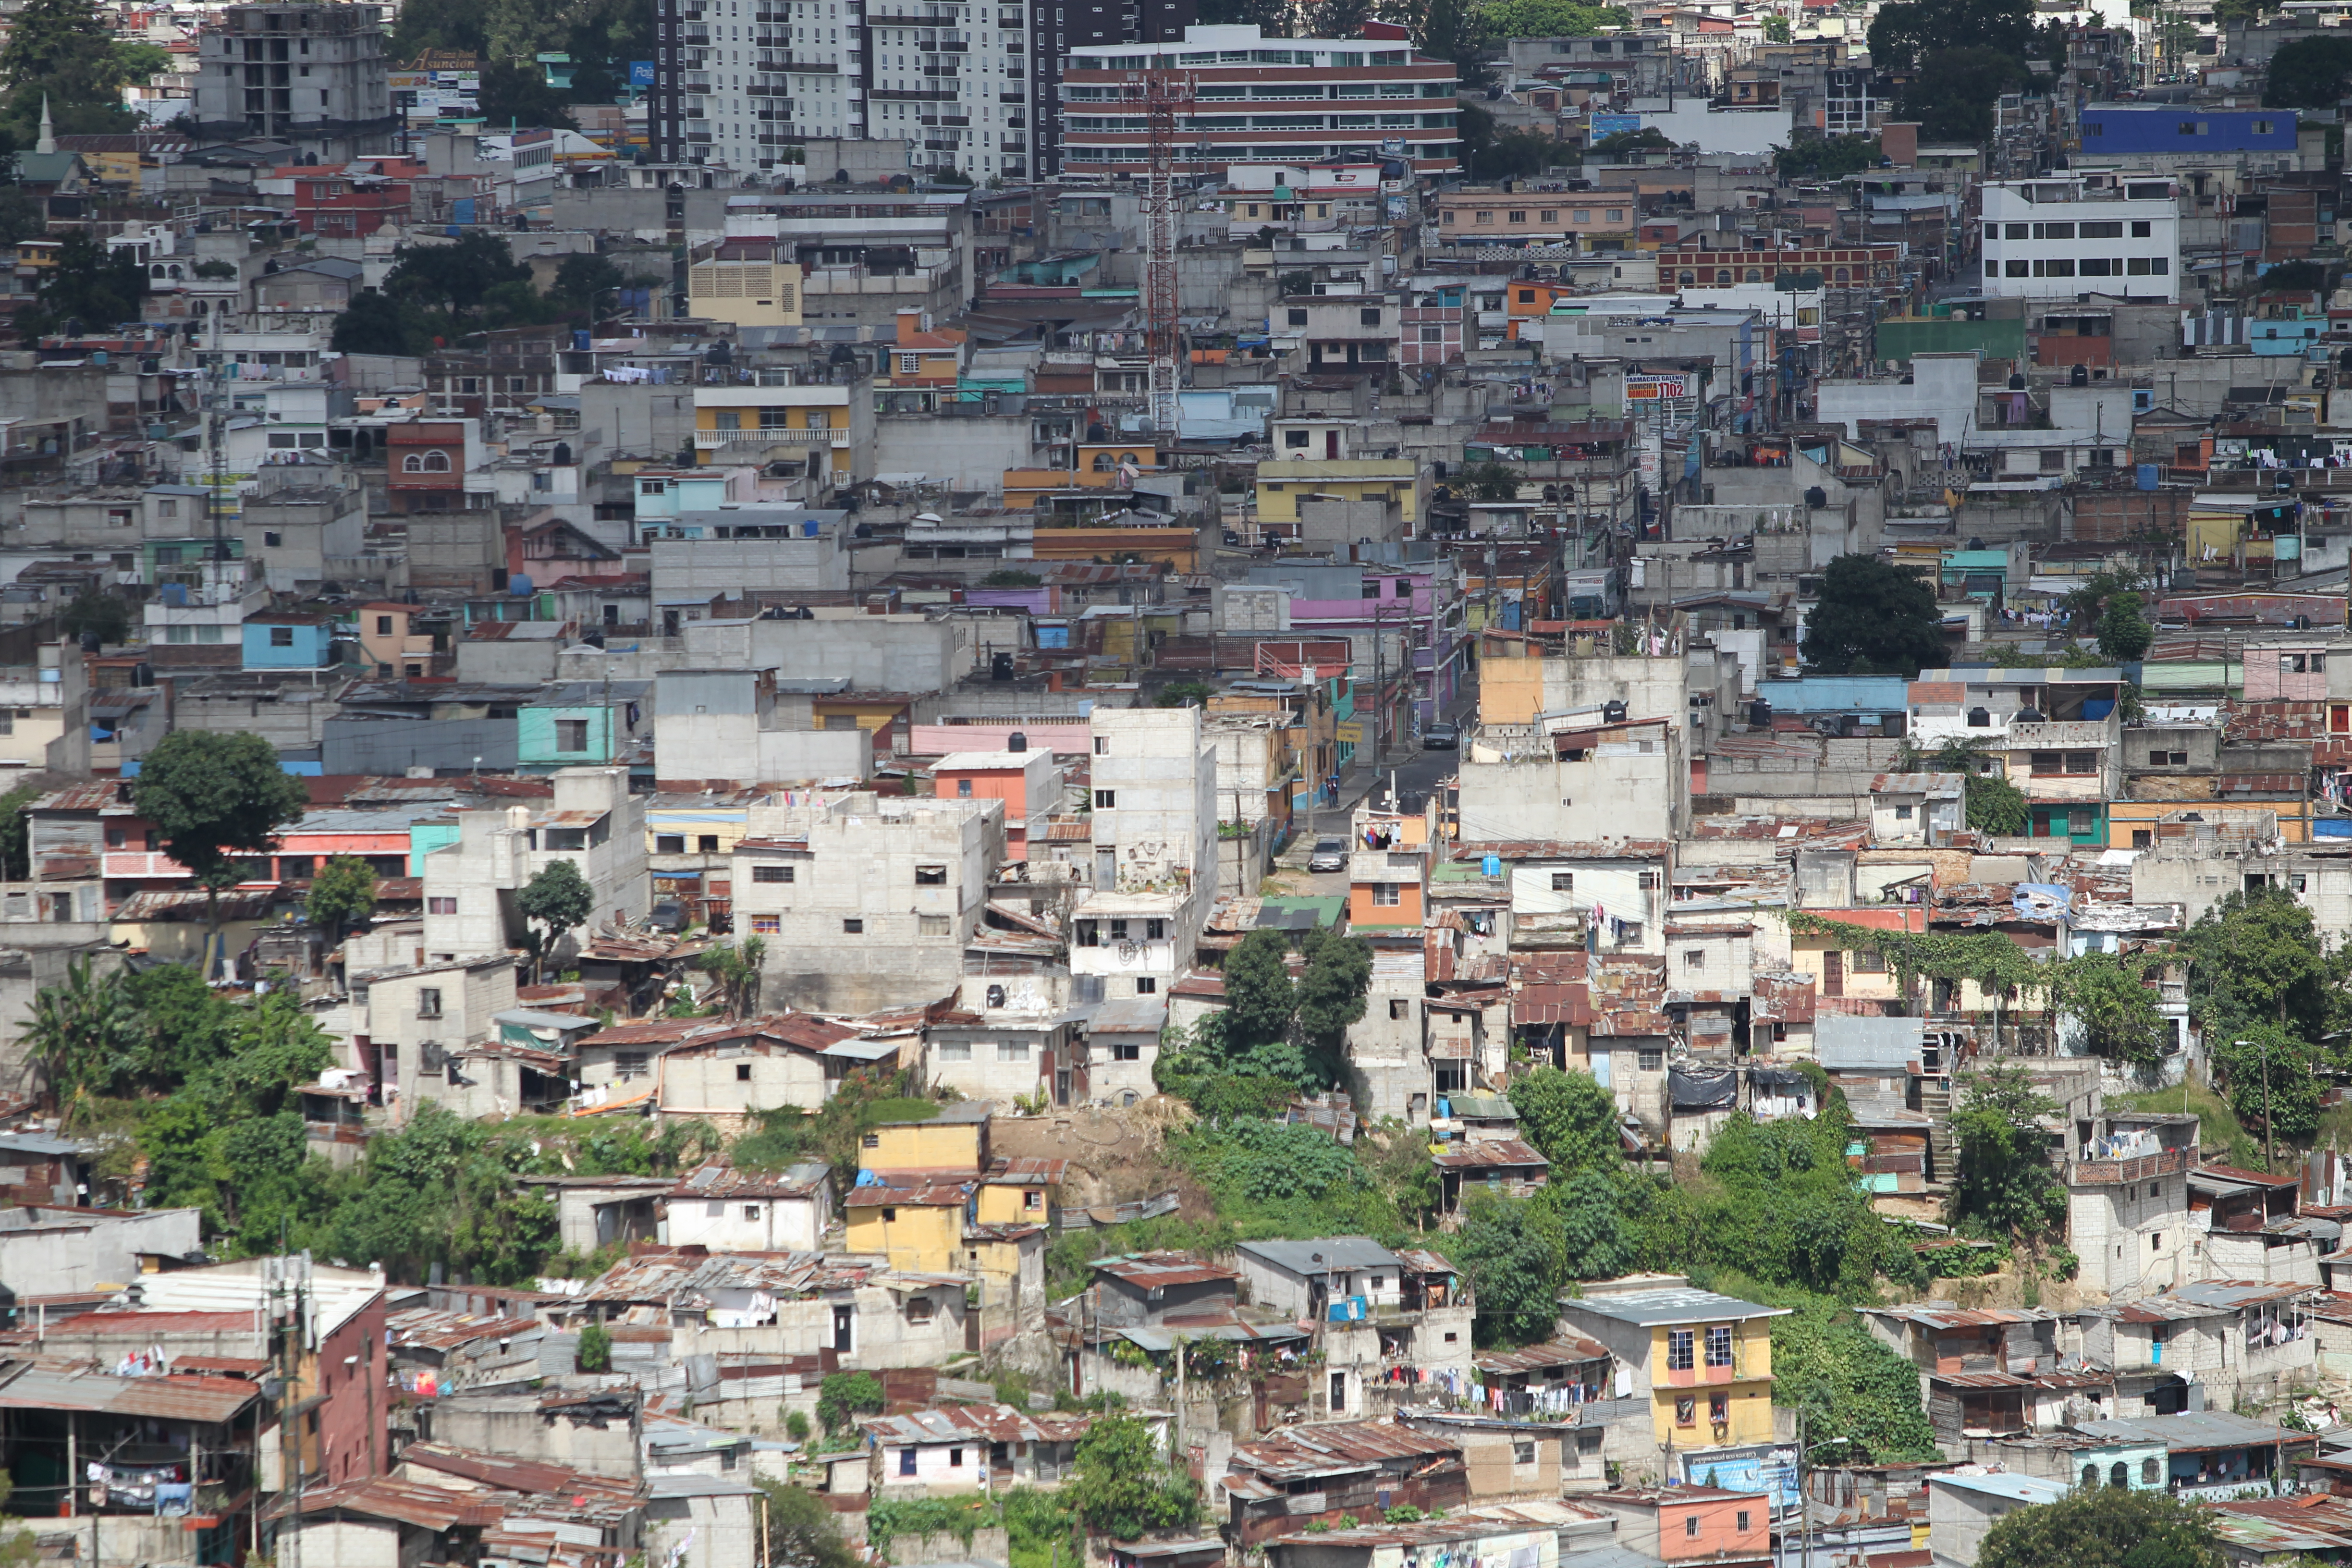 Vista panorámica de la capital guatemalteca, ciudad con diversidad de estructuras, de las cuales varias podrían estar en riesgo luego de un sismo. (Foto Prensa Libre: Erick Ávila)